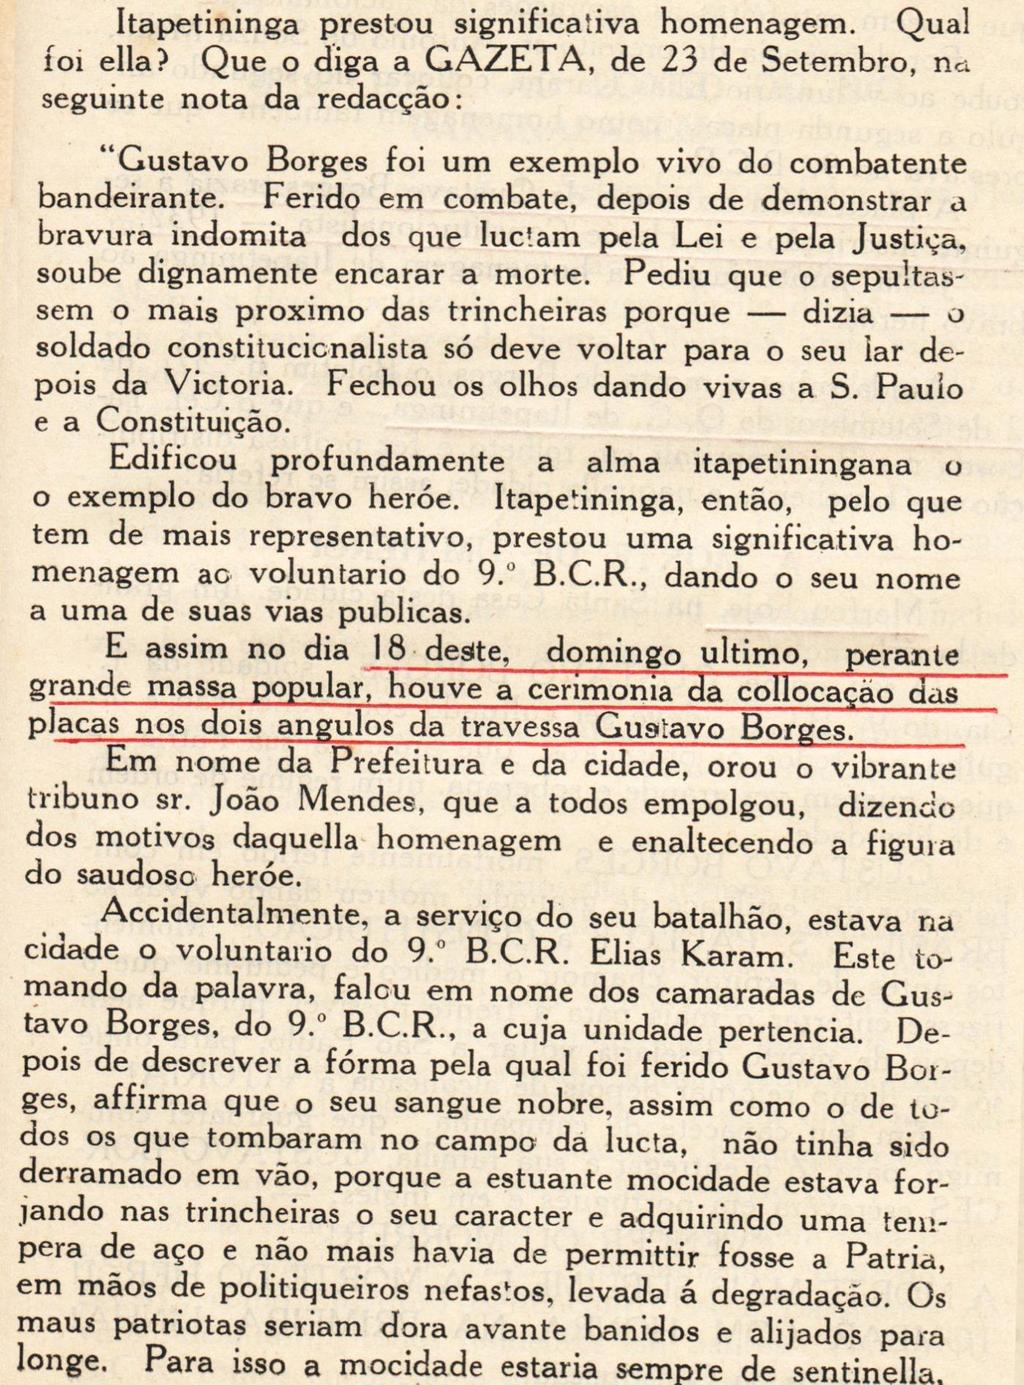 4) Excerto nº 4 correspondente à pagina de nº 227 de Karam (1933) relativo a homenagem prestada a Gustavo Borges